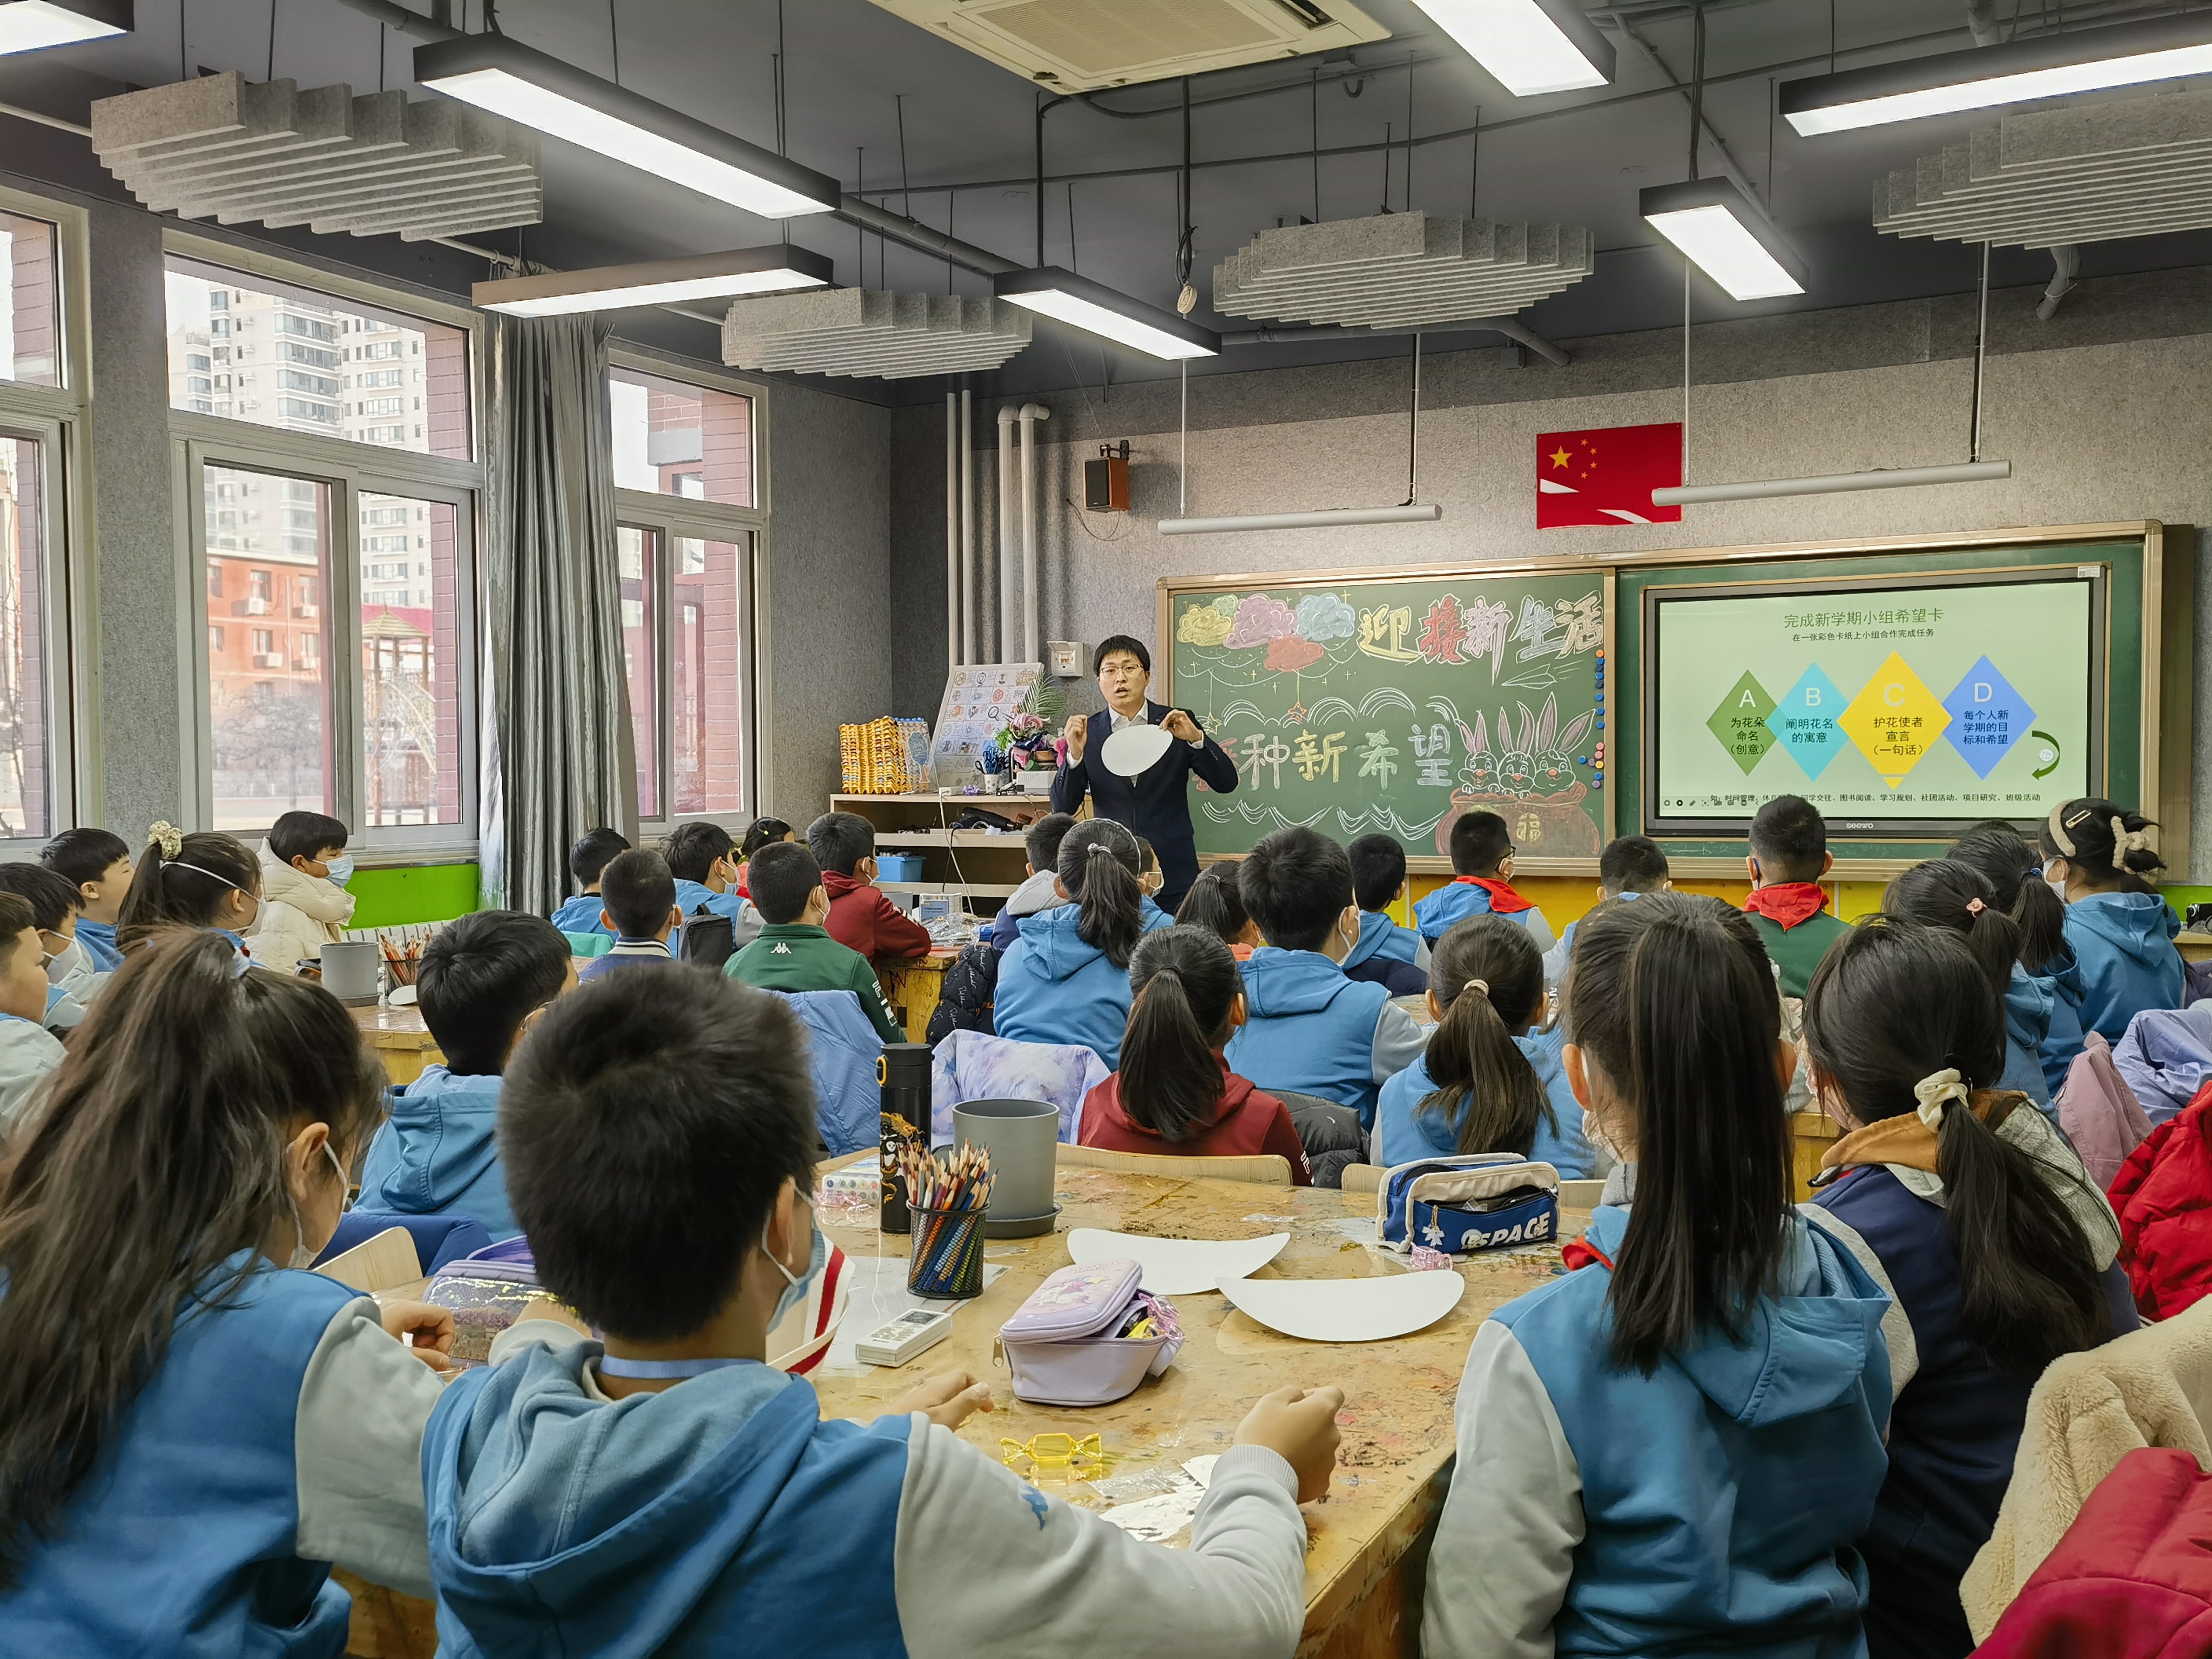 开学首日,北京十一学校一分校师生齐跳兔子舞迎接新学期